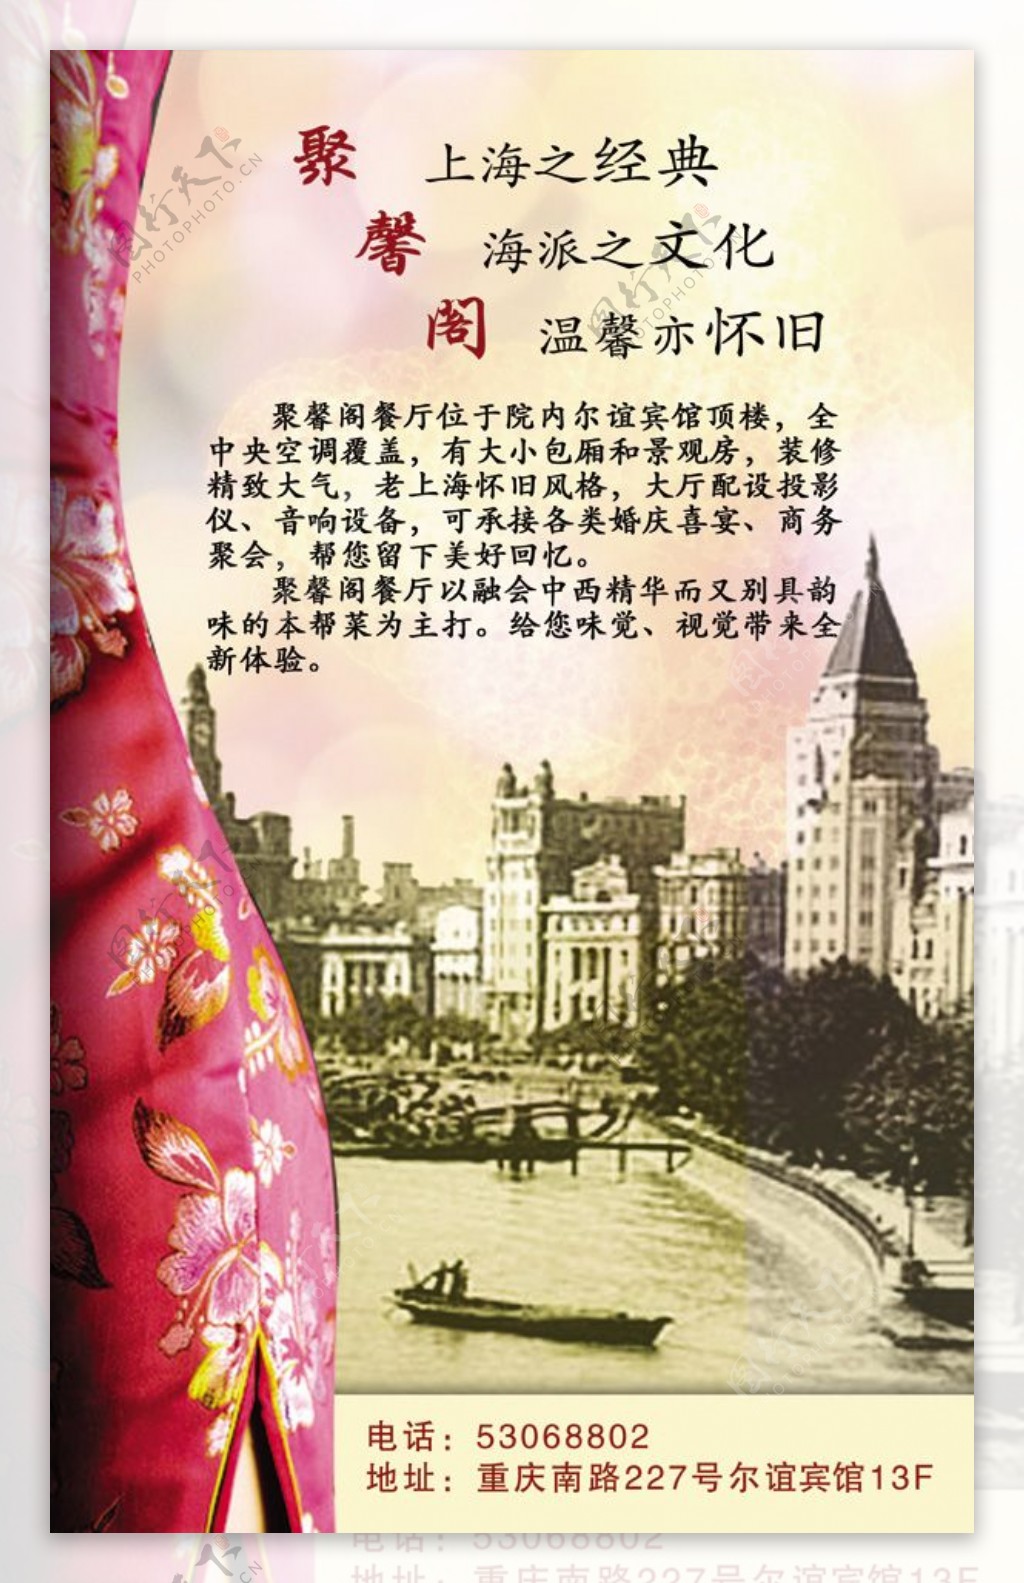 上海怀旧酒店海报